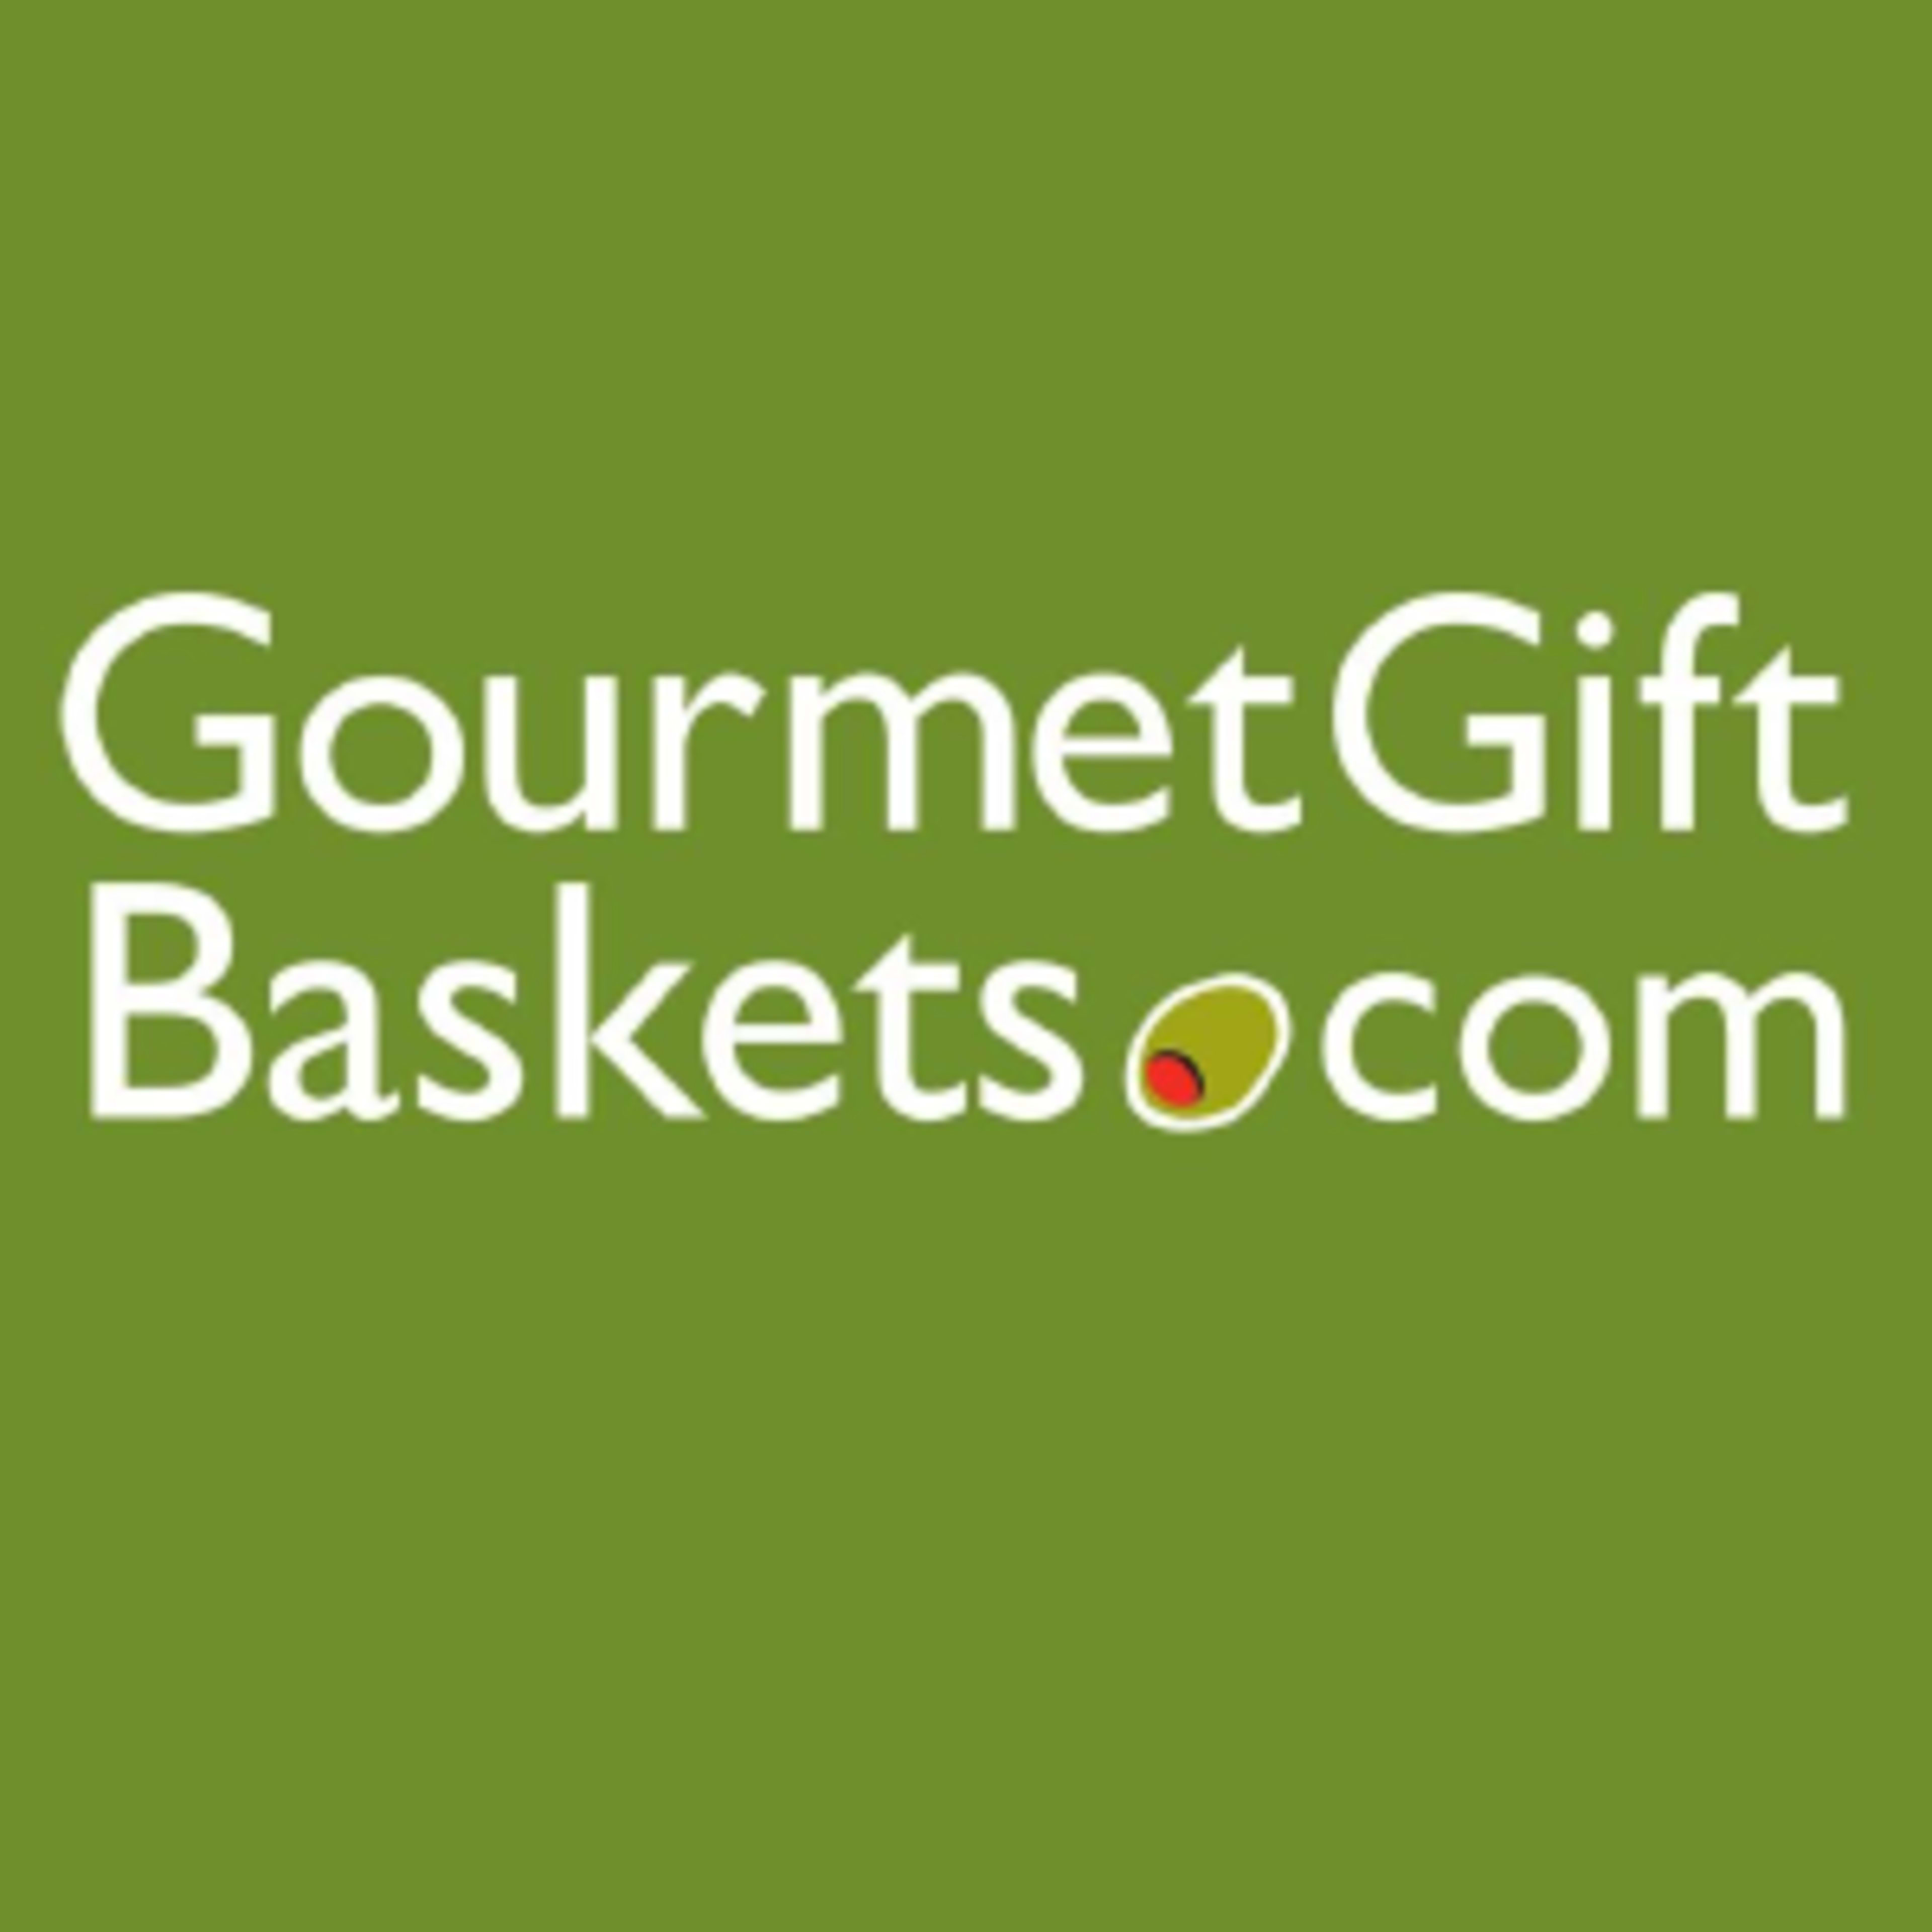 Gourmet Gift BasketsCode